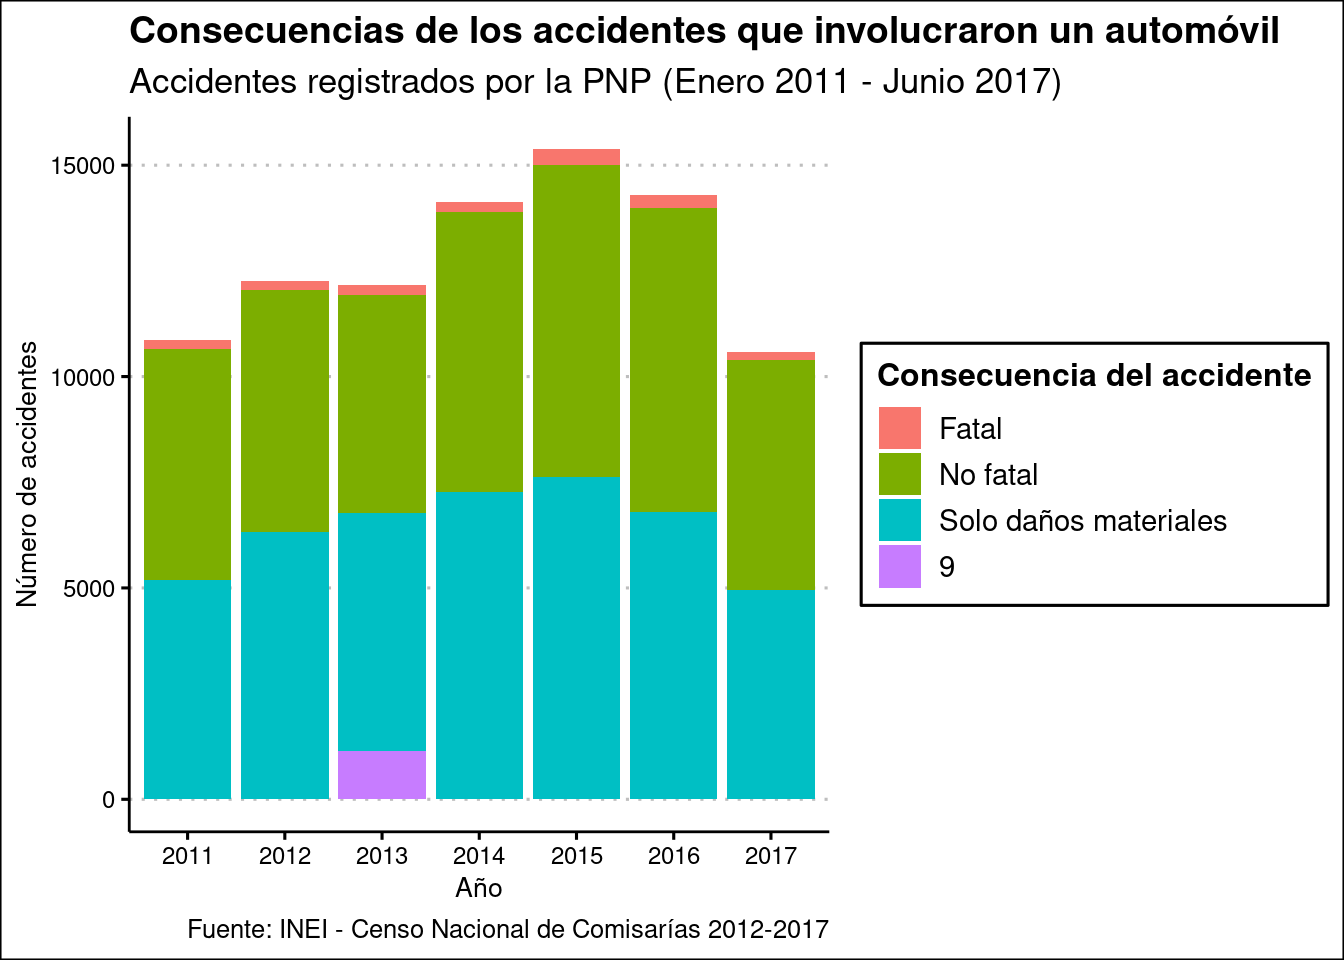 Cantidad de accidentes que involucraron un automóvil, según año y consecuencia del accidente